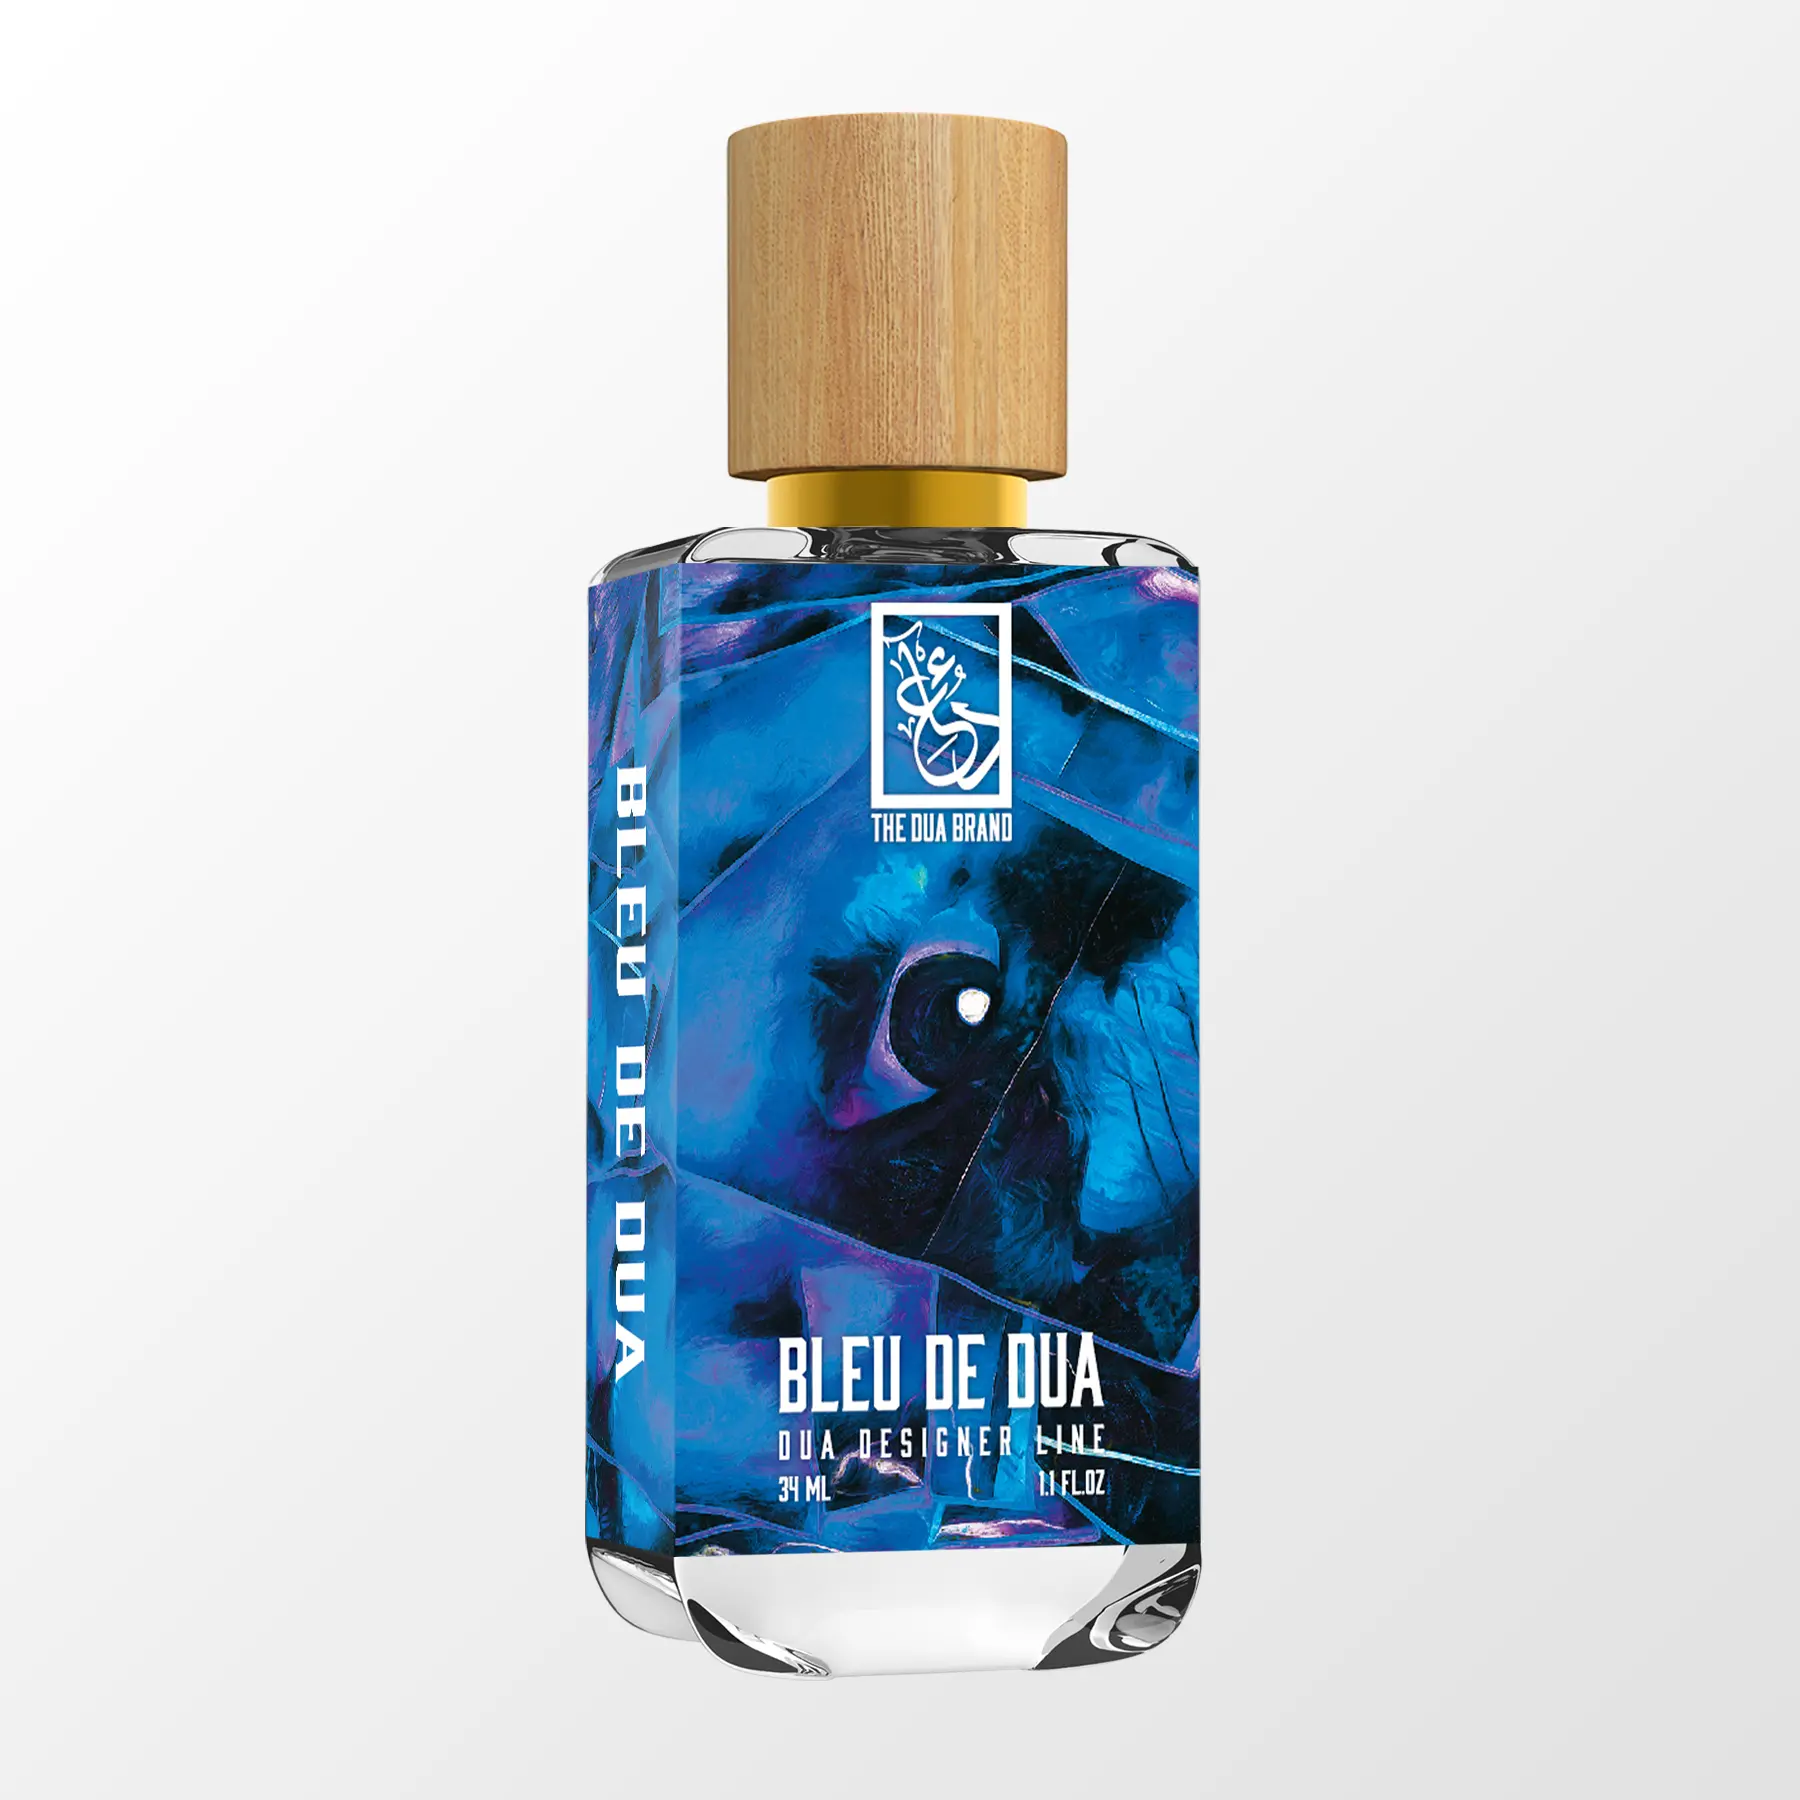 chanel bleu men 3.4 parfum